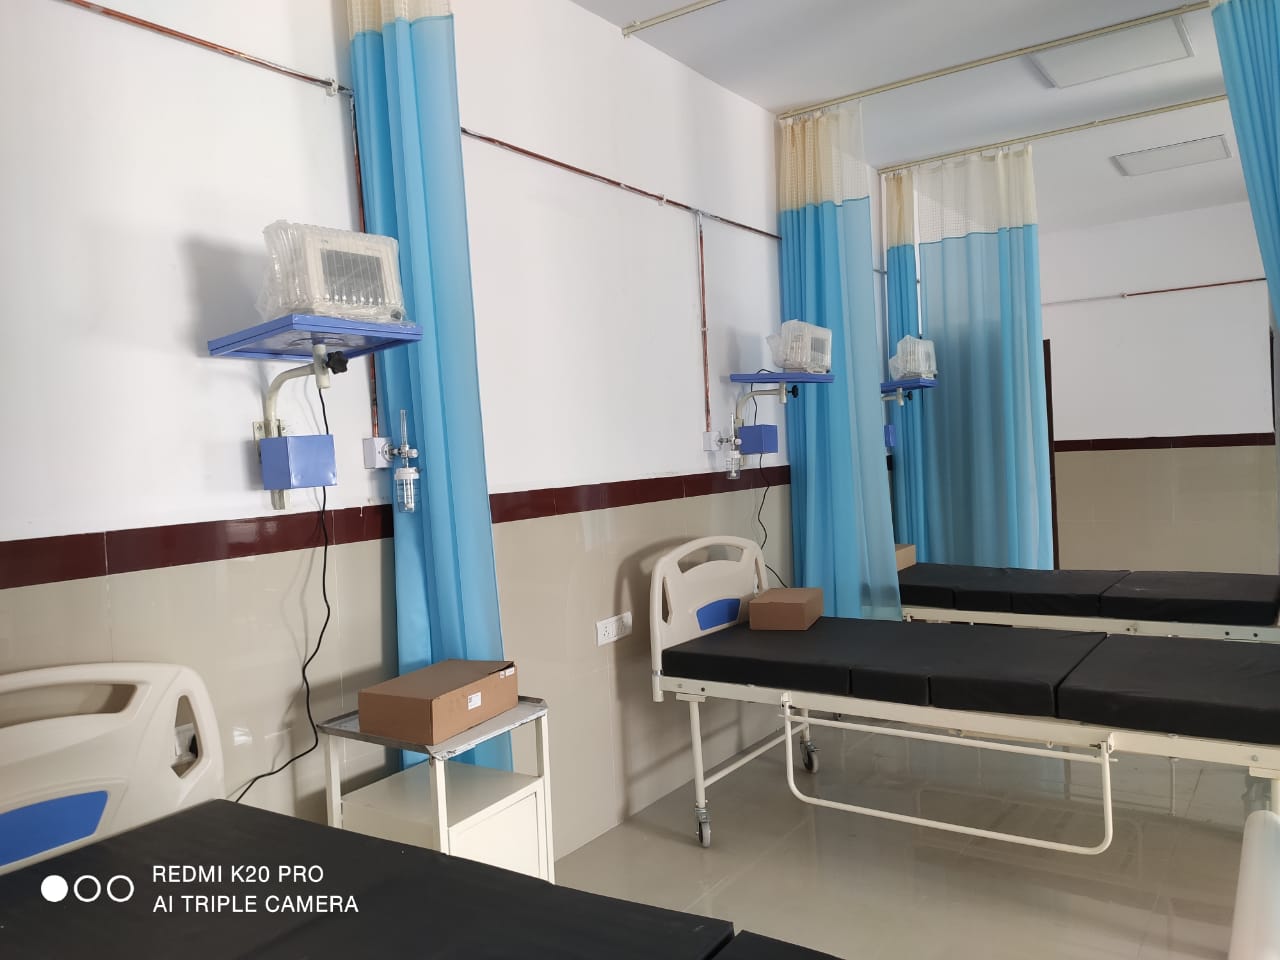 सिविल अस्पताल में बनेगी सेंट्रल पैथालाॅजी लैब, आइसीयू की भी तैयारी पूरी और अब डाॅक्टर्स के इंतजार